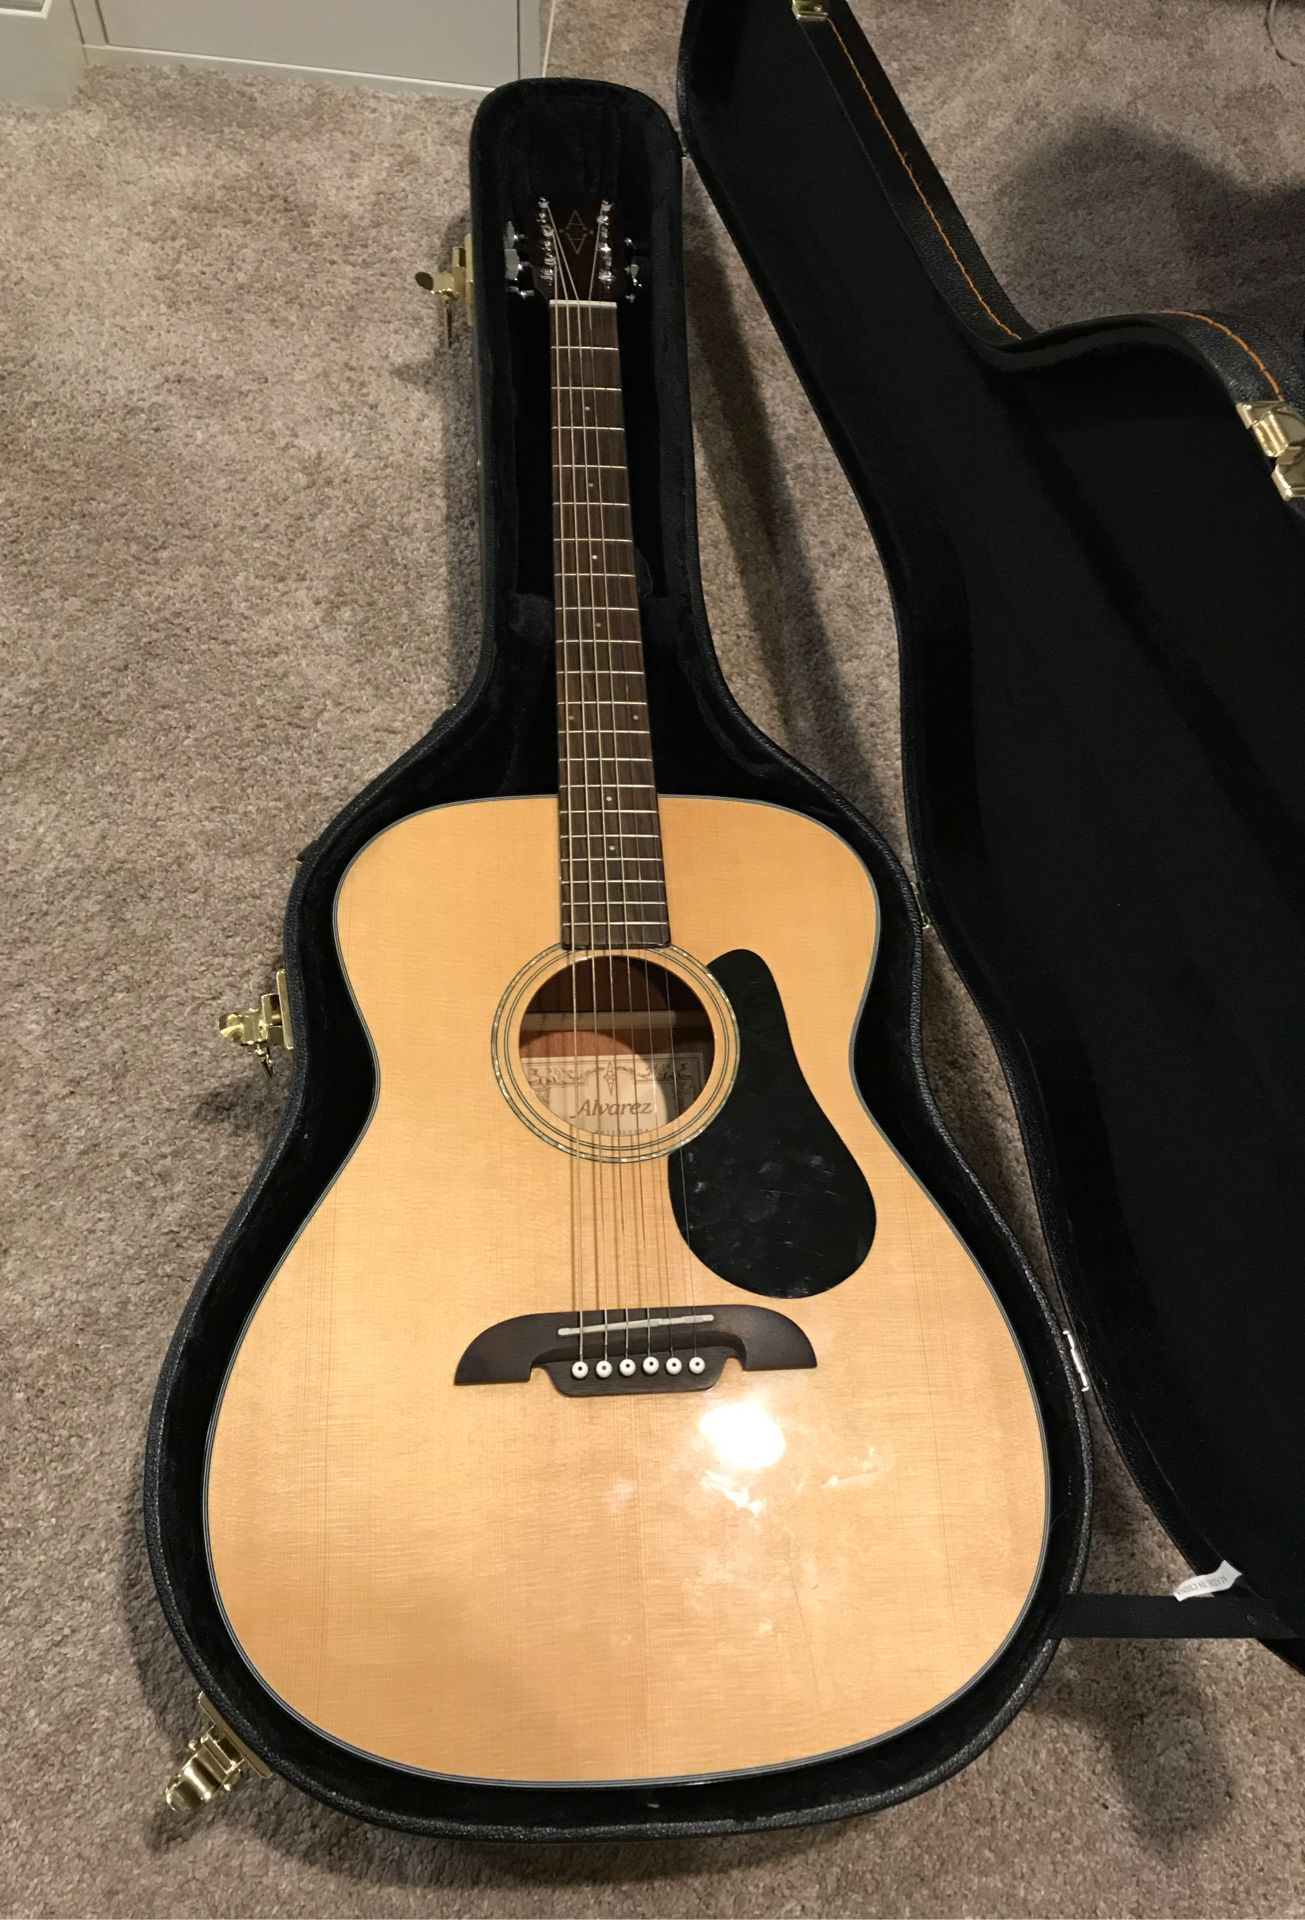 Alvarez Acoustic Guitar and Case